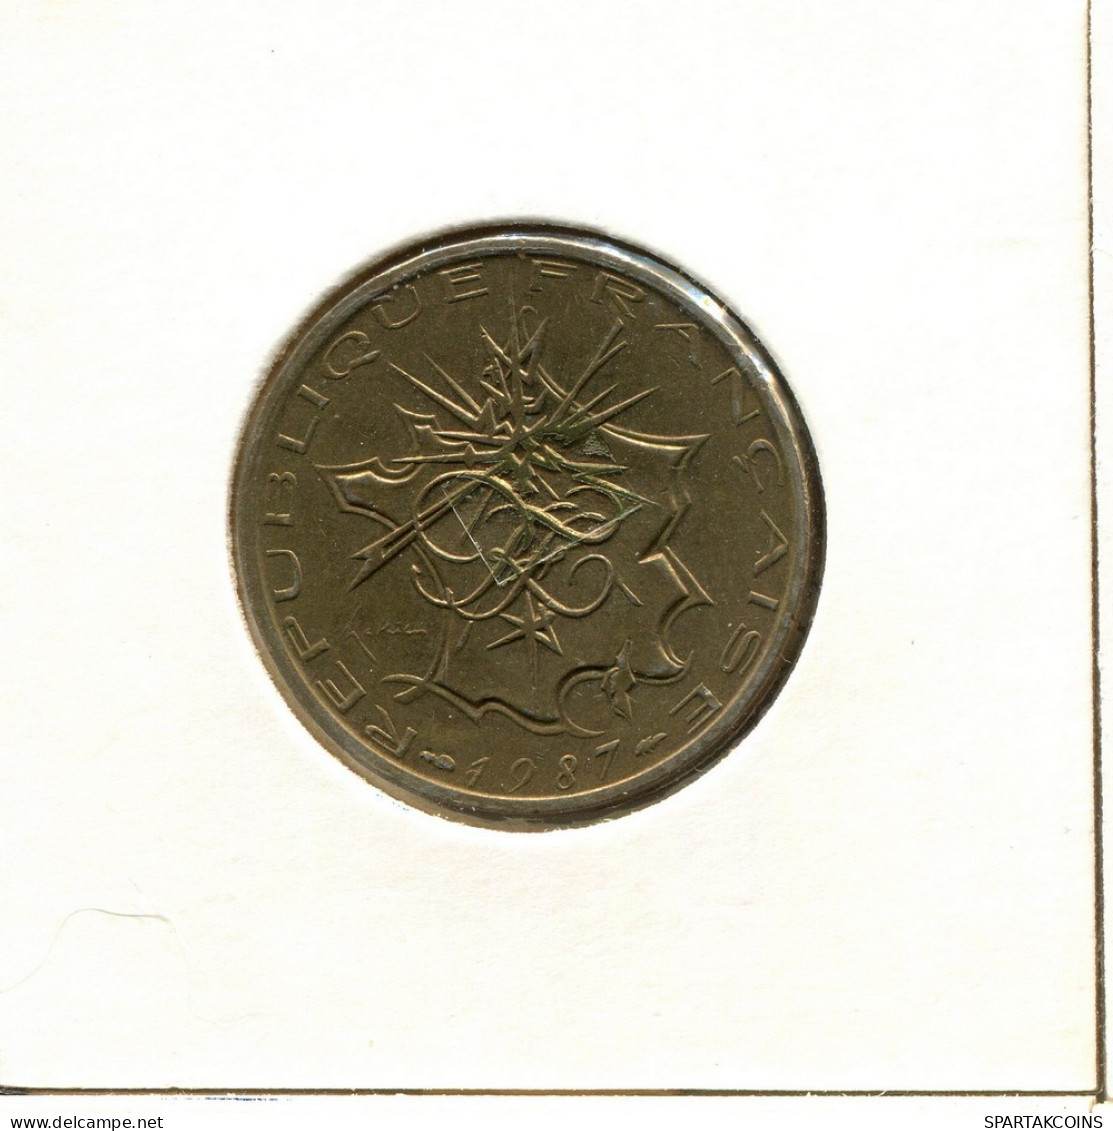 10 FRANCS 1987 FRANCIA FRANCE Moneda #BB623.E.A - 10 Francs